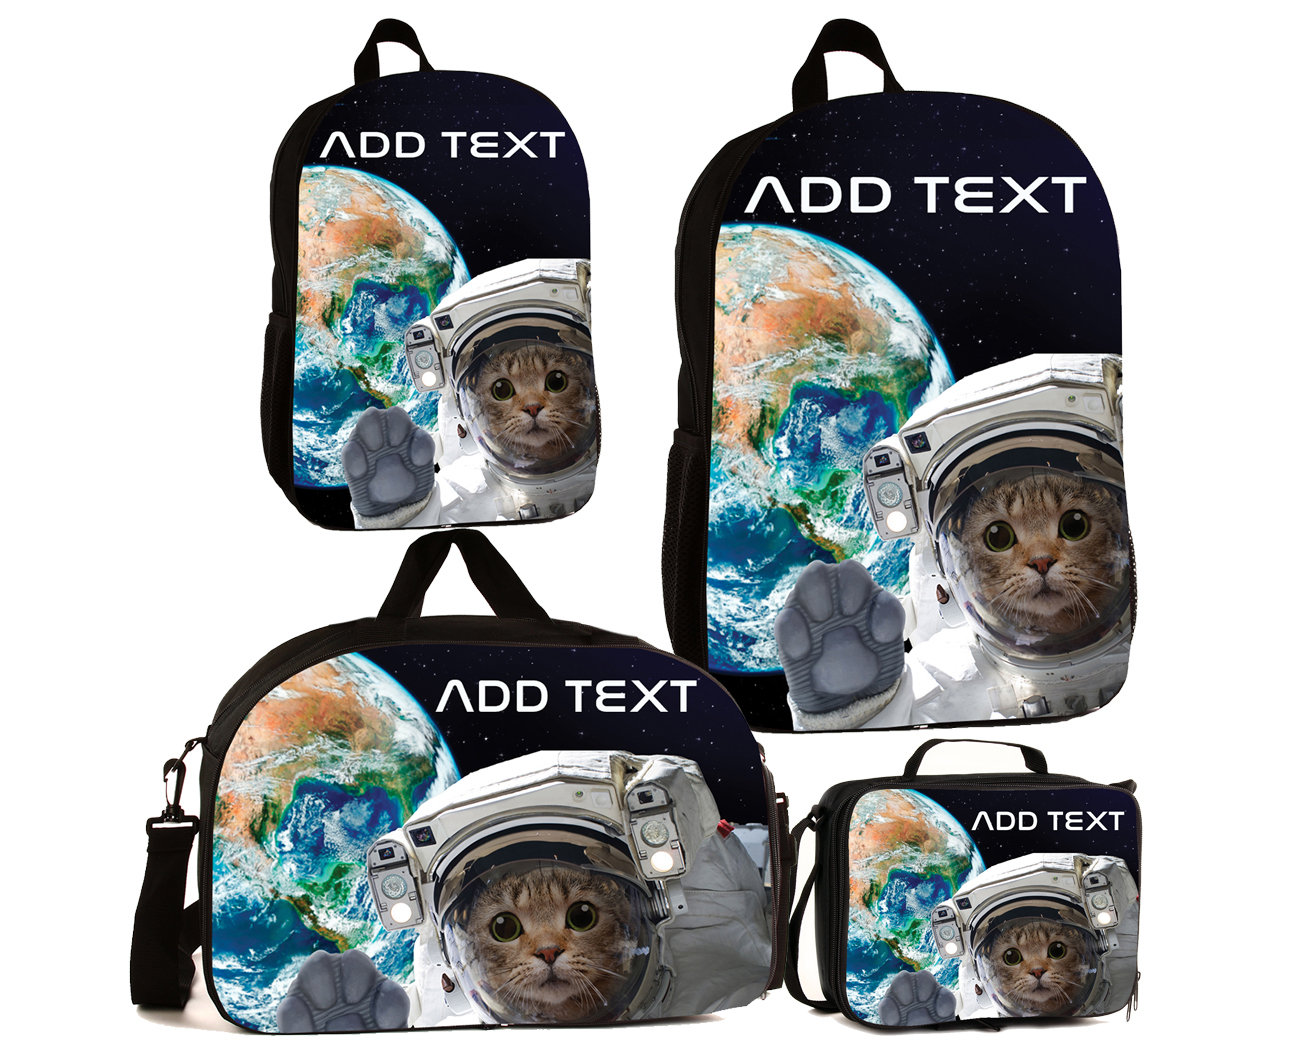 Personalisierte Vollfarb Kinder Rucksäcke/Lunch Bag Seesack - Space Astronaut Cat von KishKesh